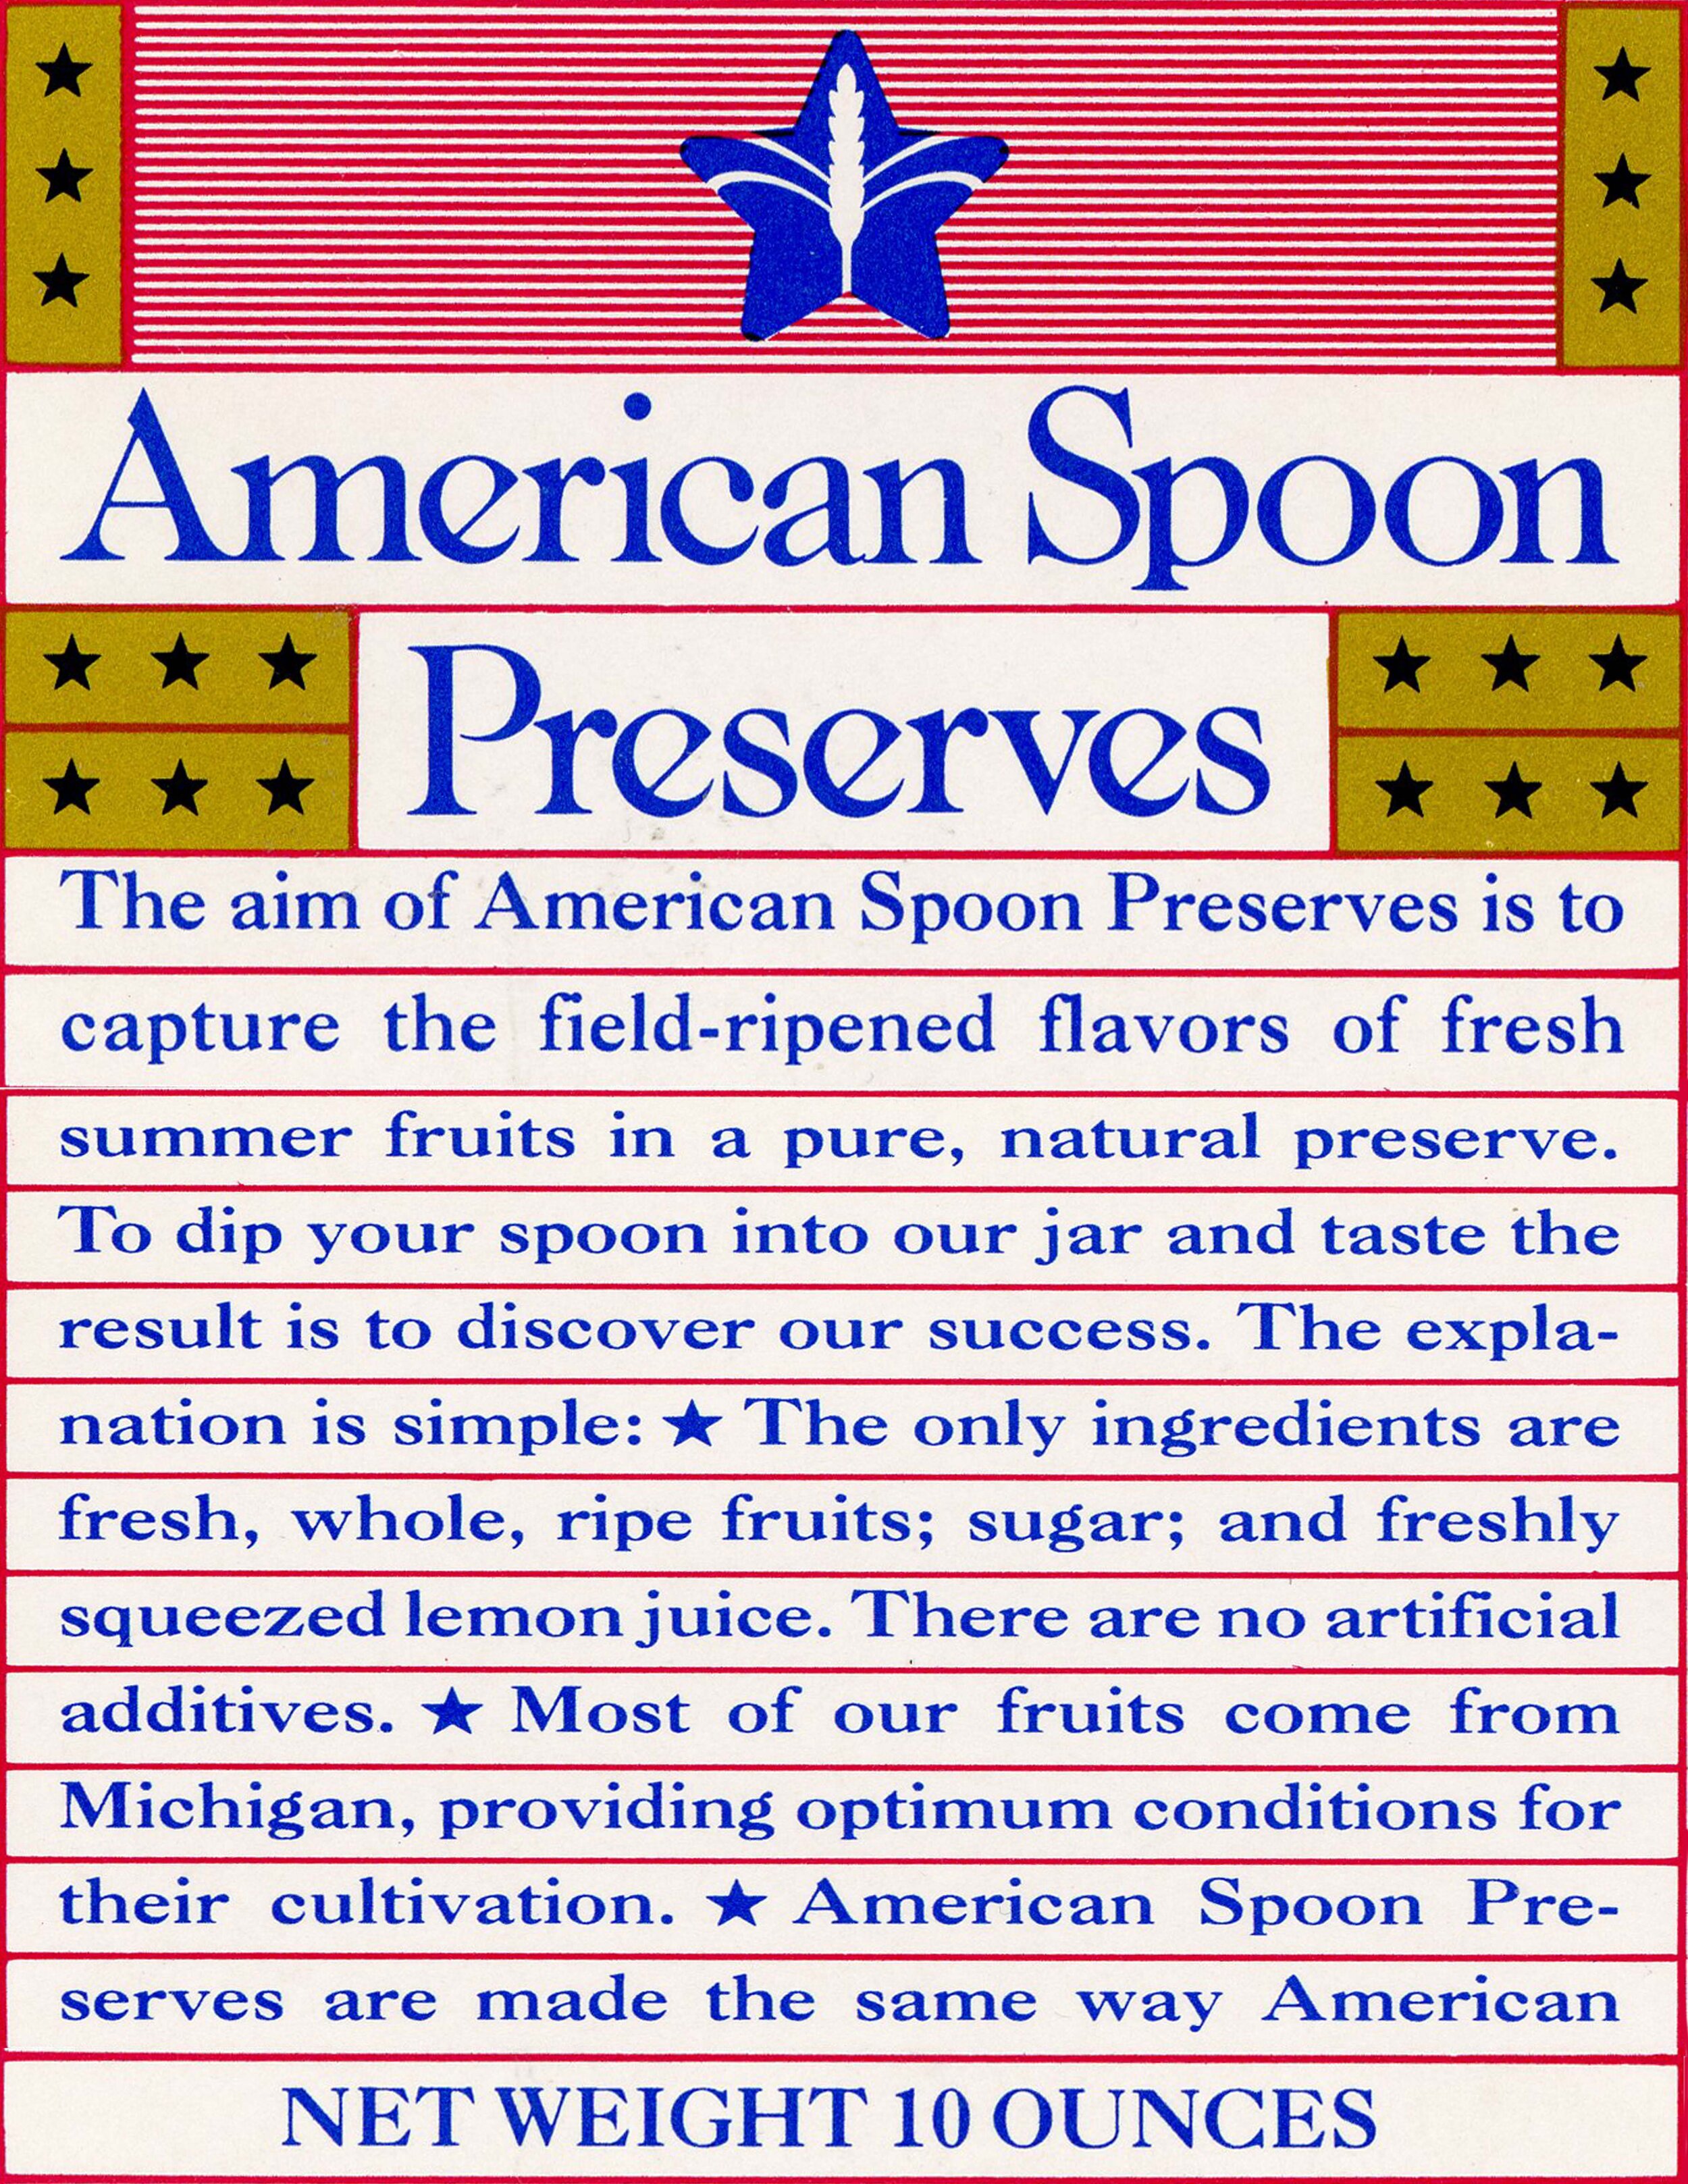 American spoon preserves_2.jpg